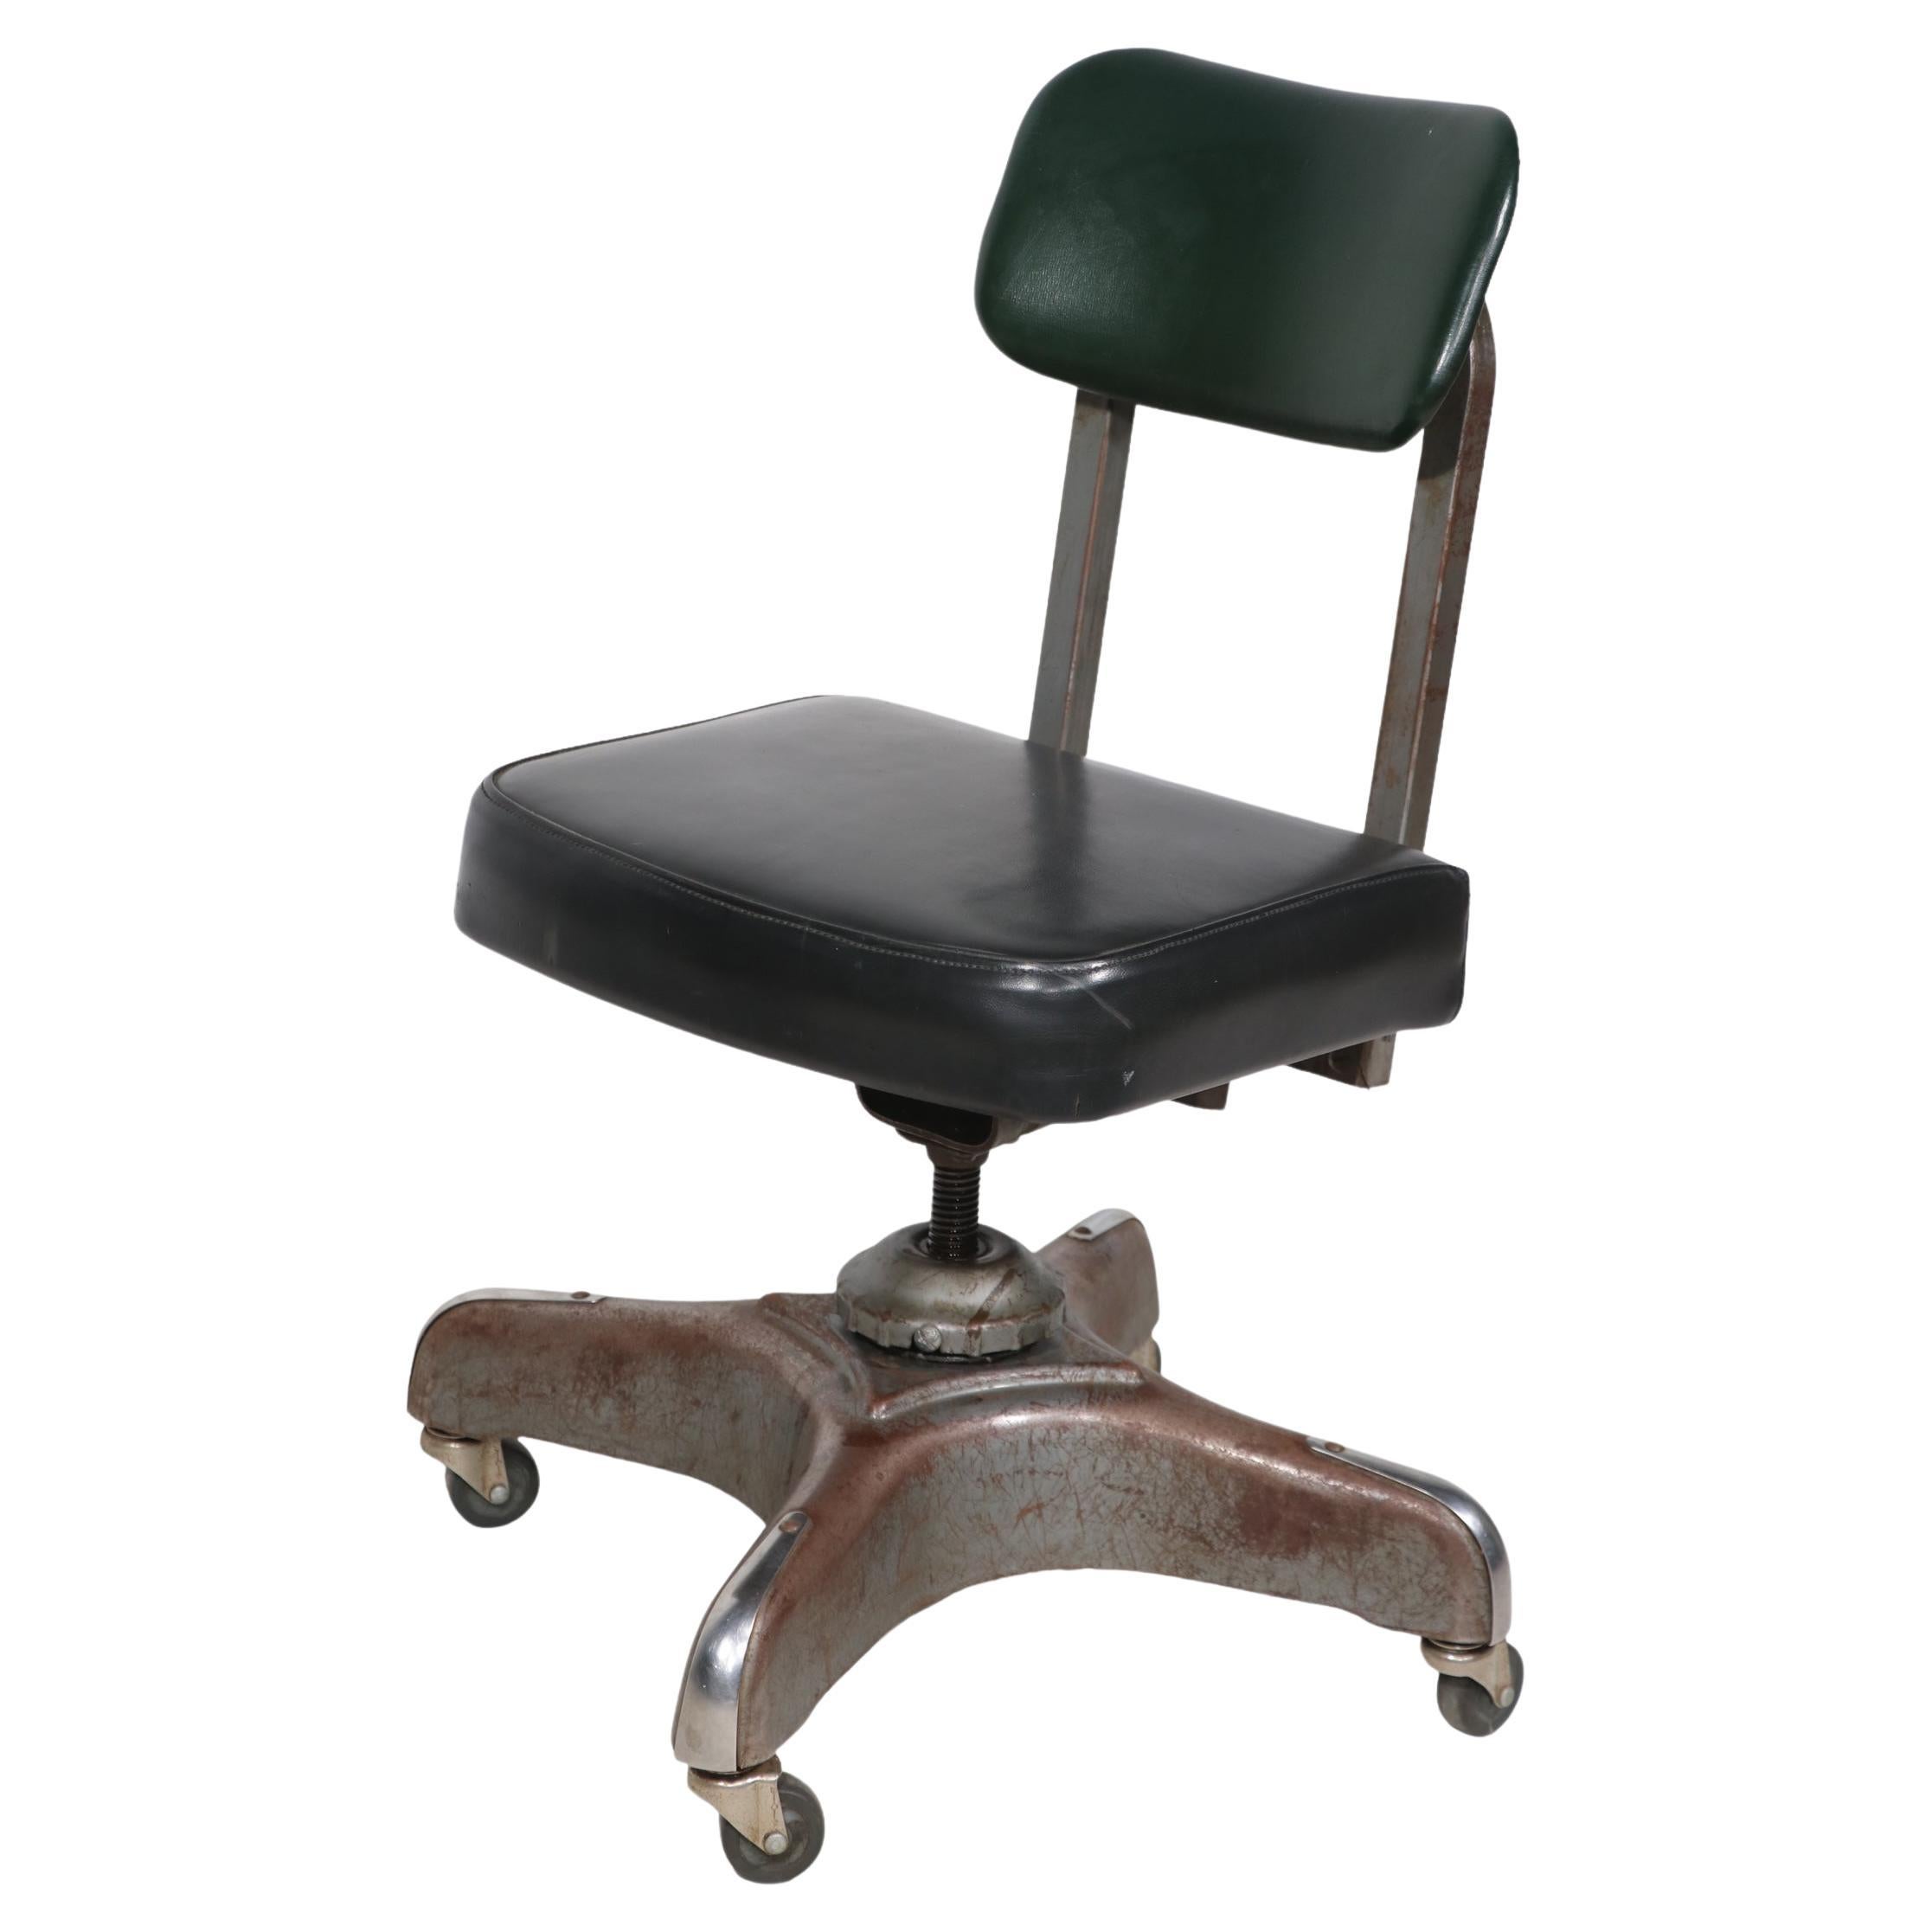 Chaise de bureau Art Déco industrielle sans accoudoirs pivotante par Harter Corporation 1930/40